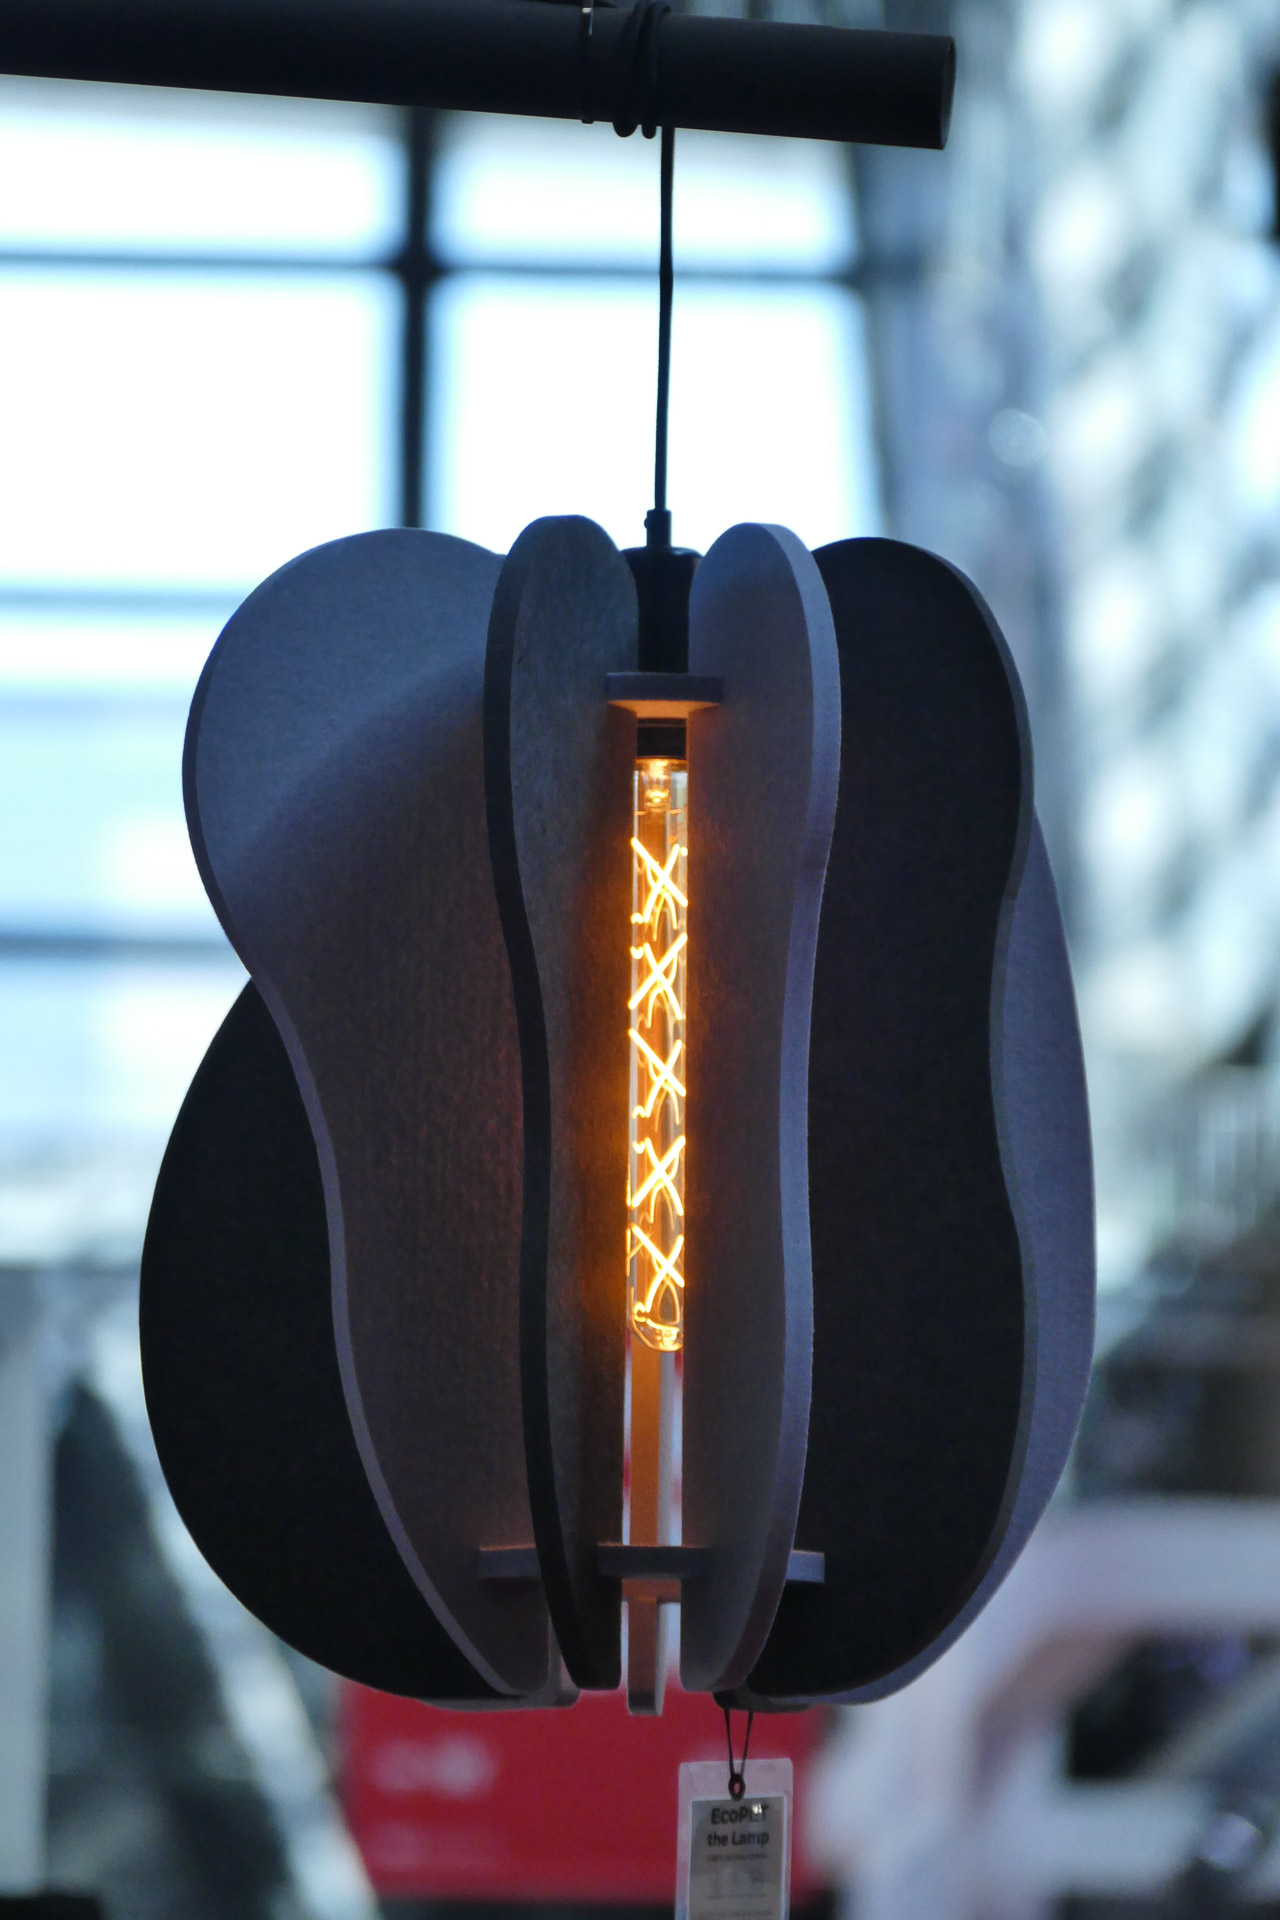 Szara geometryczna lampa akustyczna dźwiękochłonna z ozdobną żarówką prezentowana na targach Batimat 2022